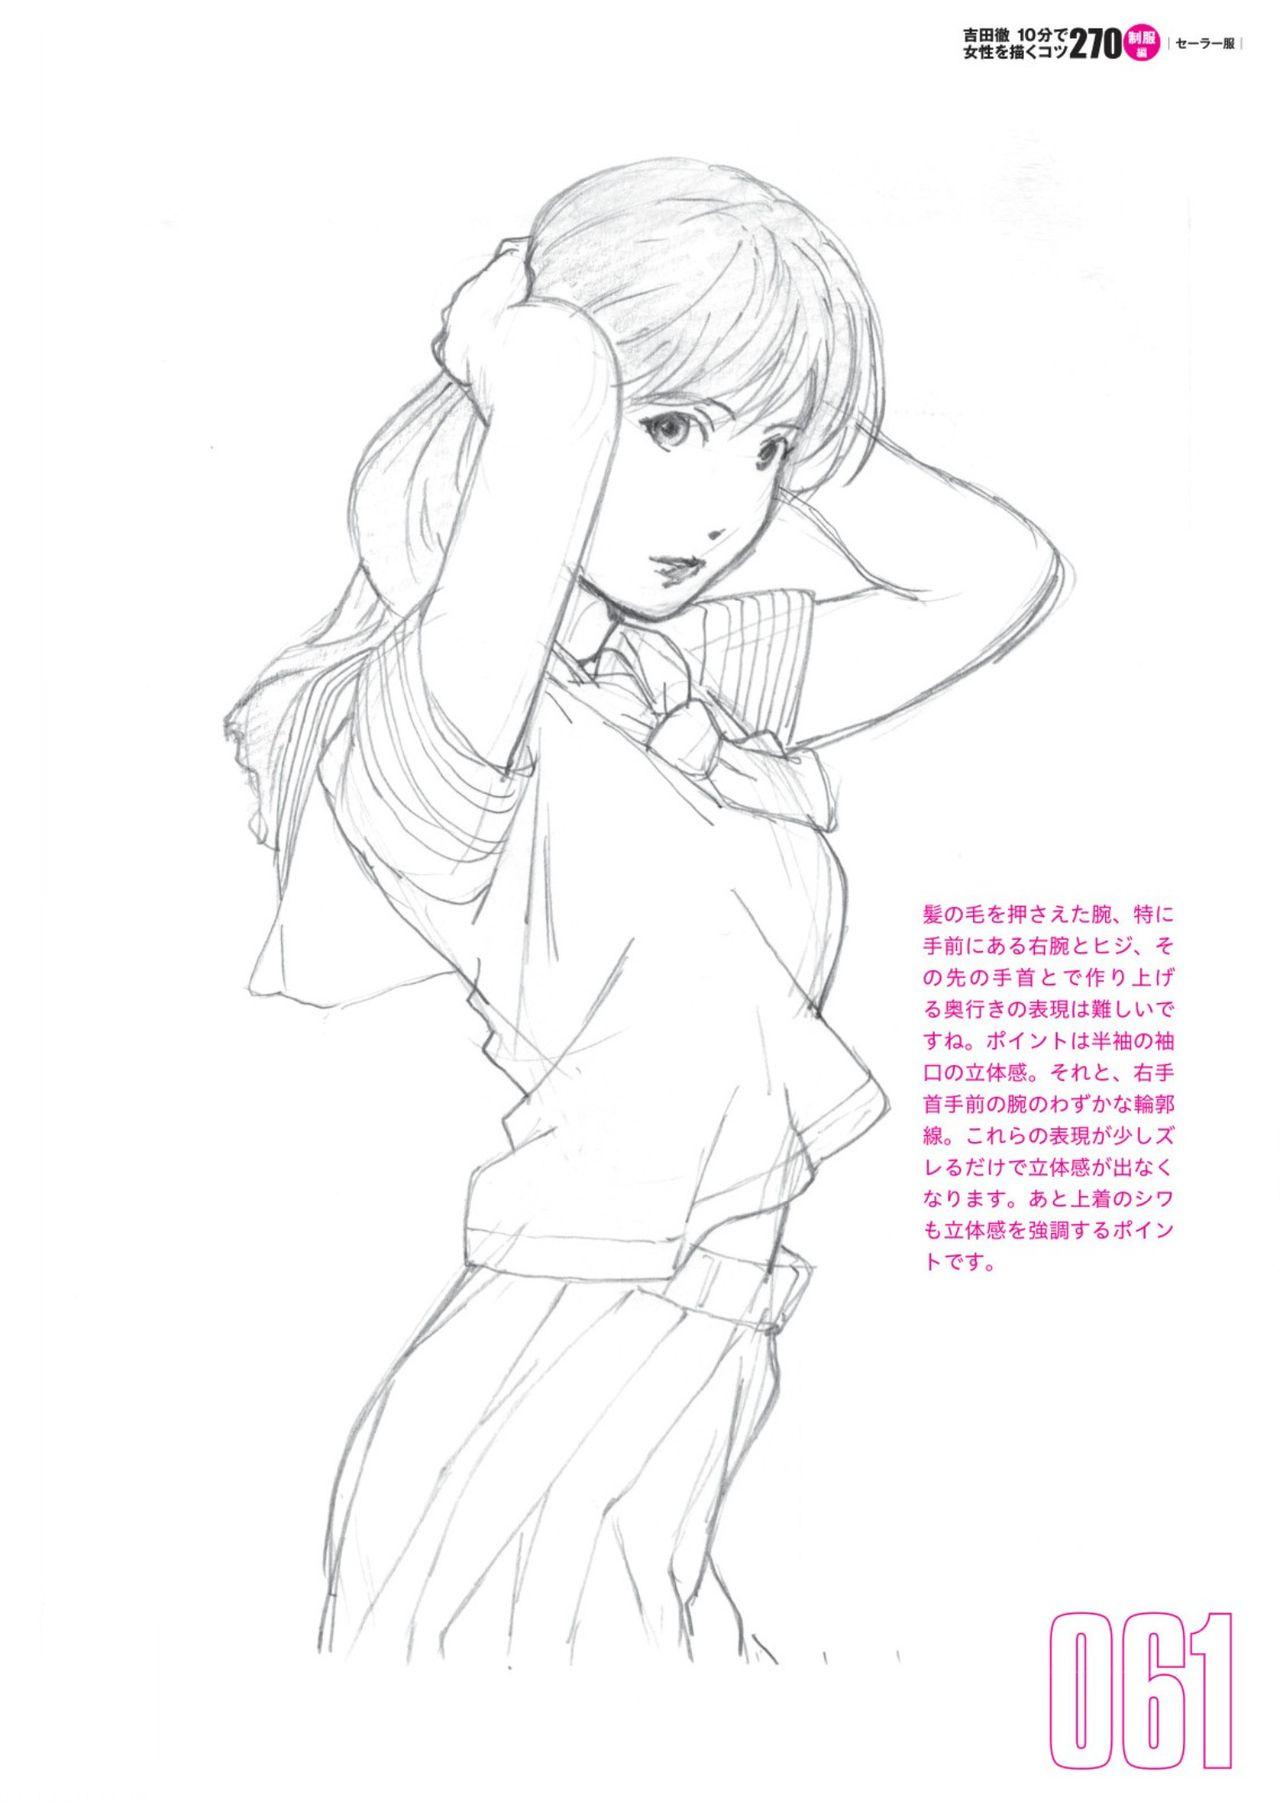 Toru Yoshida Tips for drawing women in 10 minutes 270 Uniforms 62